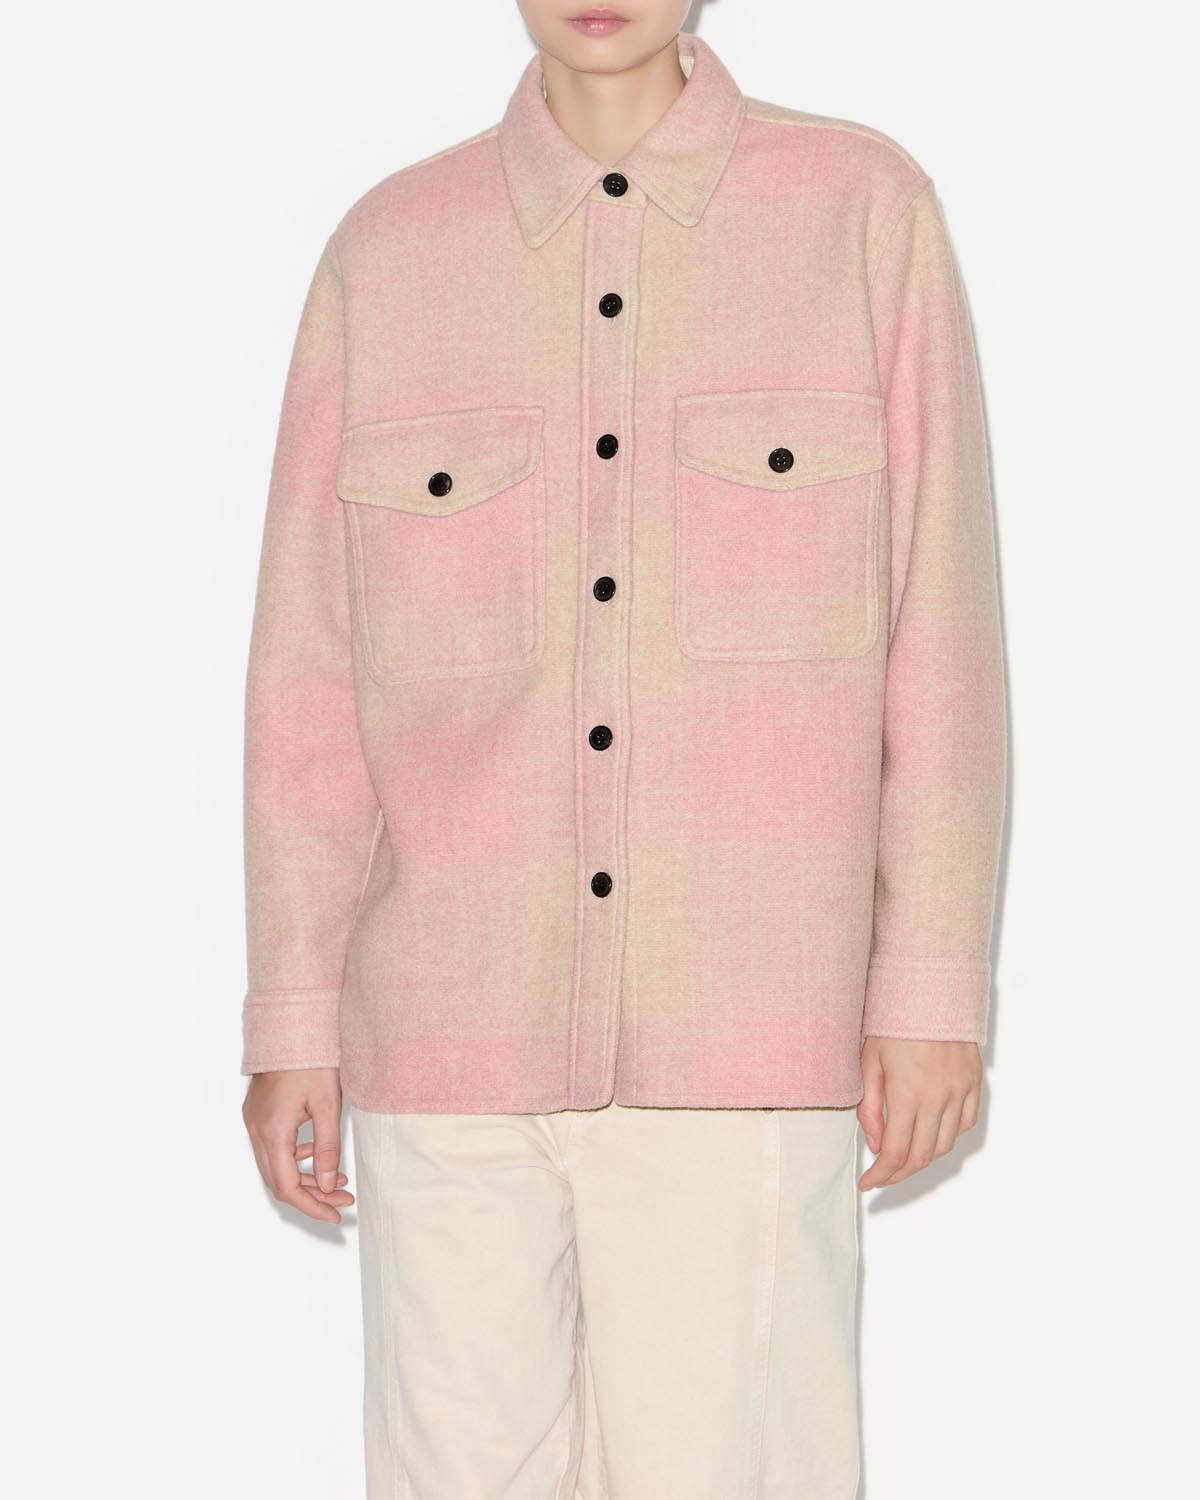 Faxon mantel Woman Light pink 5